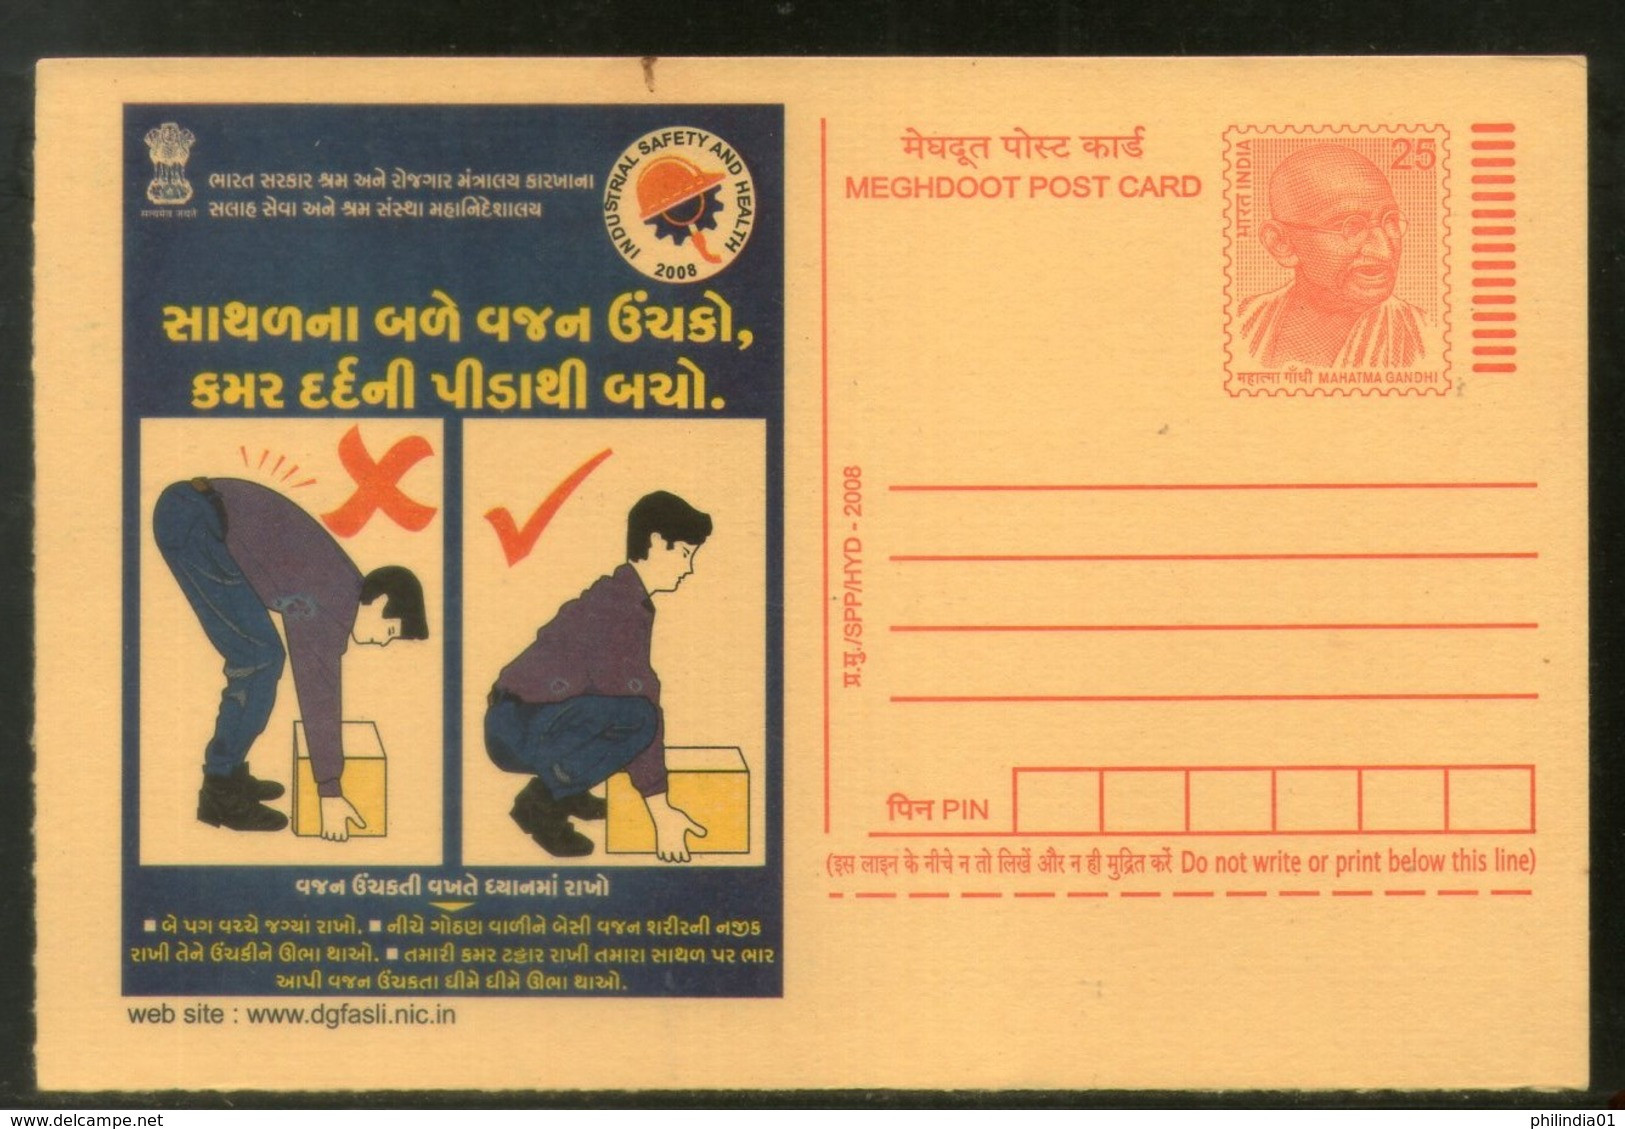 India 2008 Prevent Backaches Industrial Safety & Health Gujrati Advert Gandhi Meghdoot Post Card # 503 - Ongevallen & Veiligheid Op De Weg